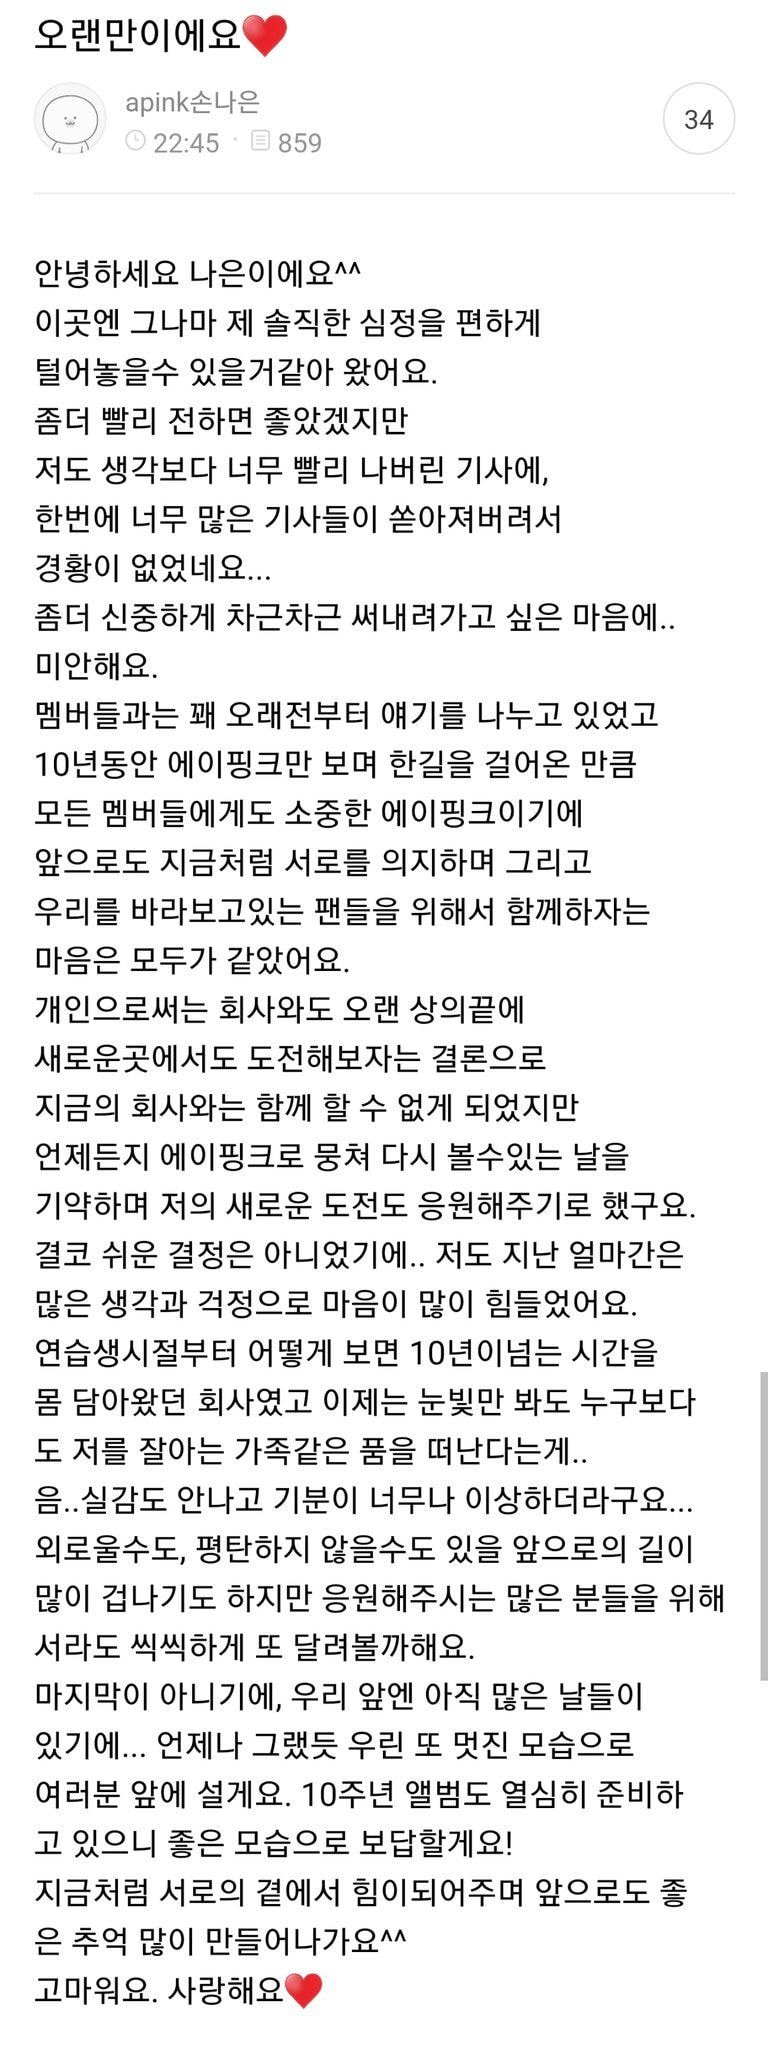 에이핑크 공식카페에 올라온 손나은 글